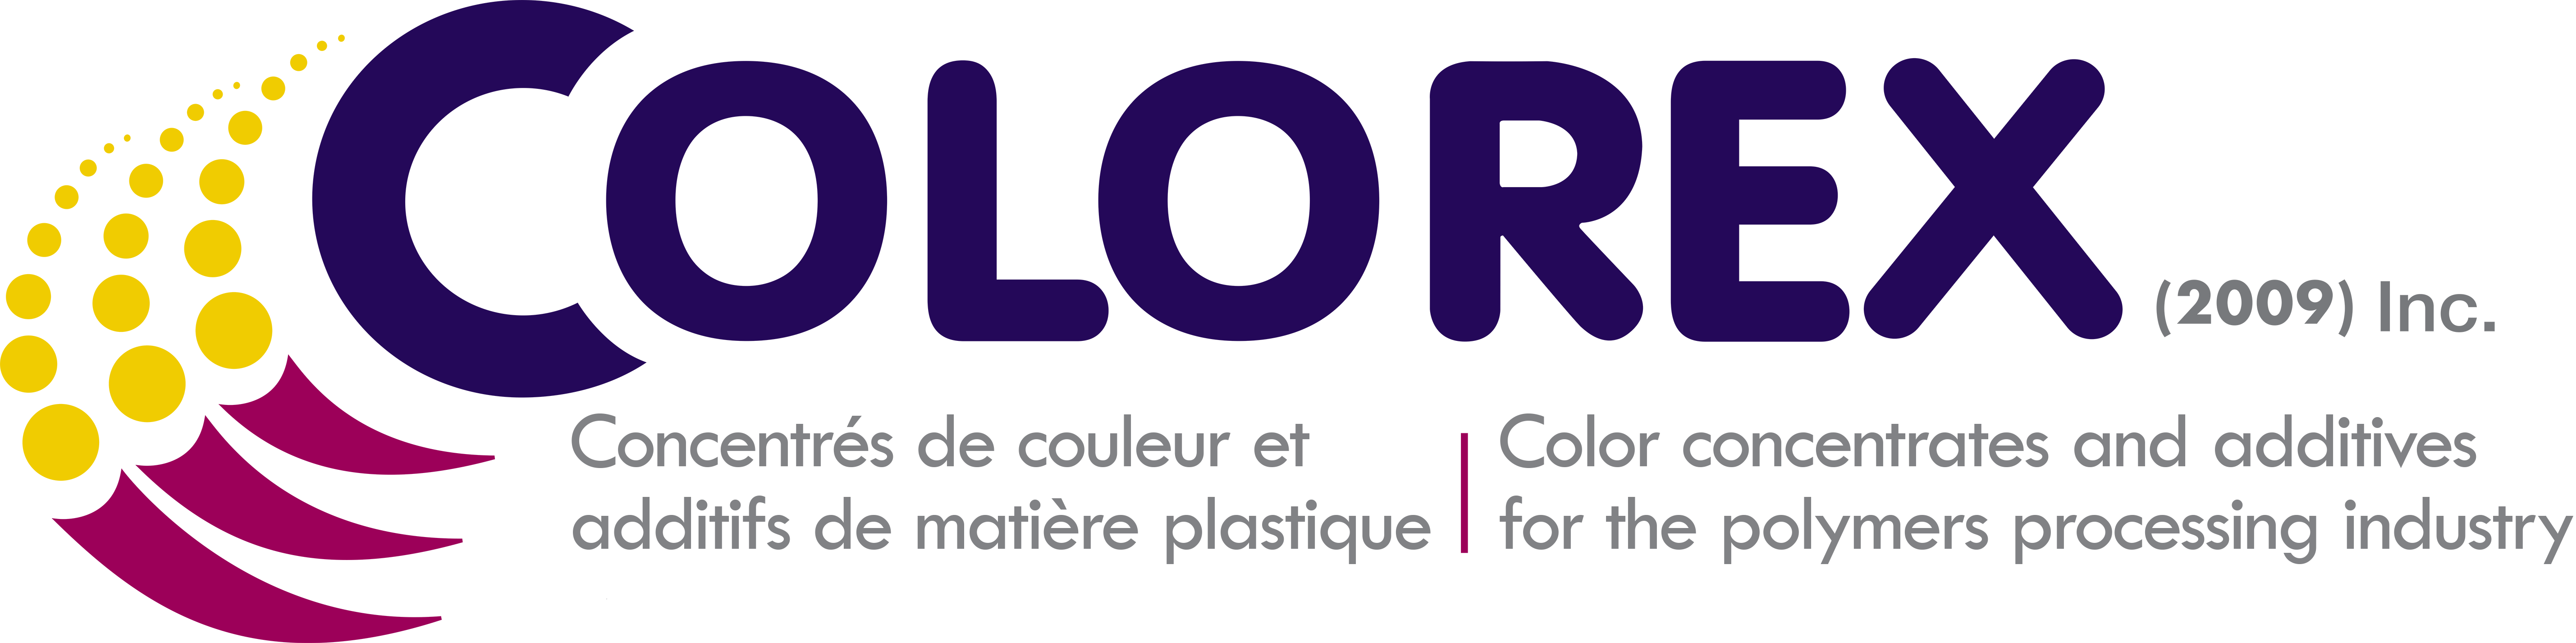 Logo Colorex FR-ENG 2017.png